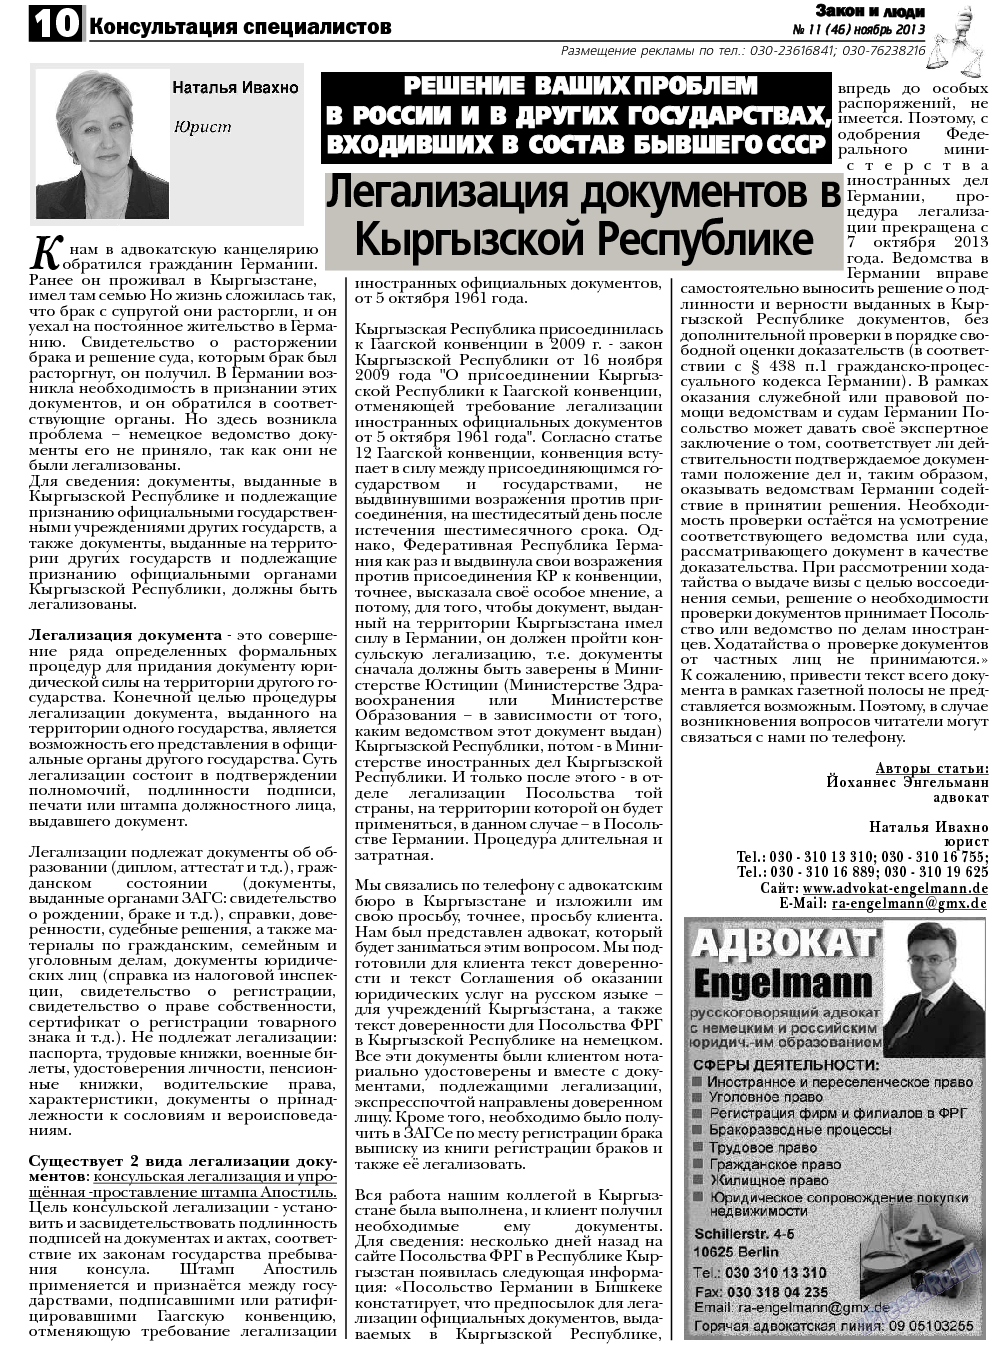 Закон и люди, газета. 2013 №11 стр.10